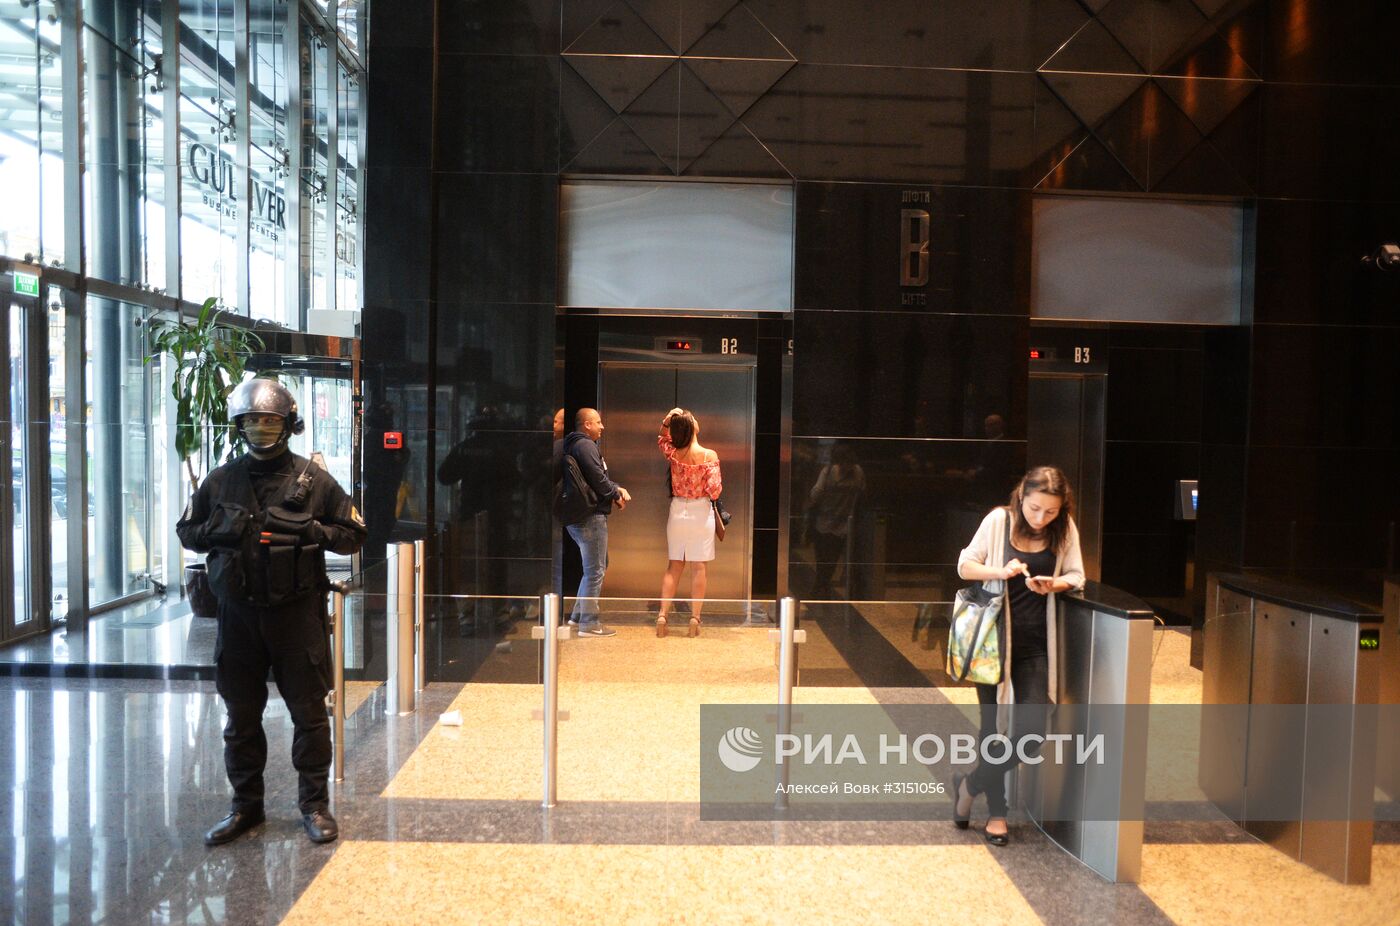 Обыски проходят в офисах украинского издания "Вести"